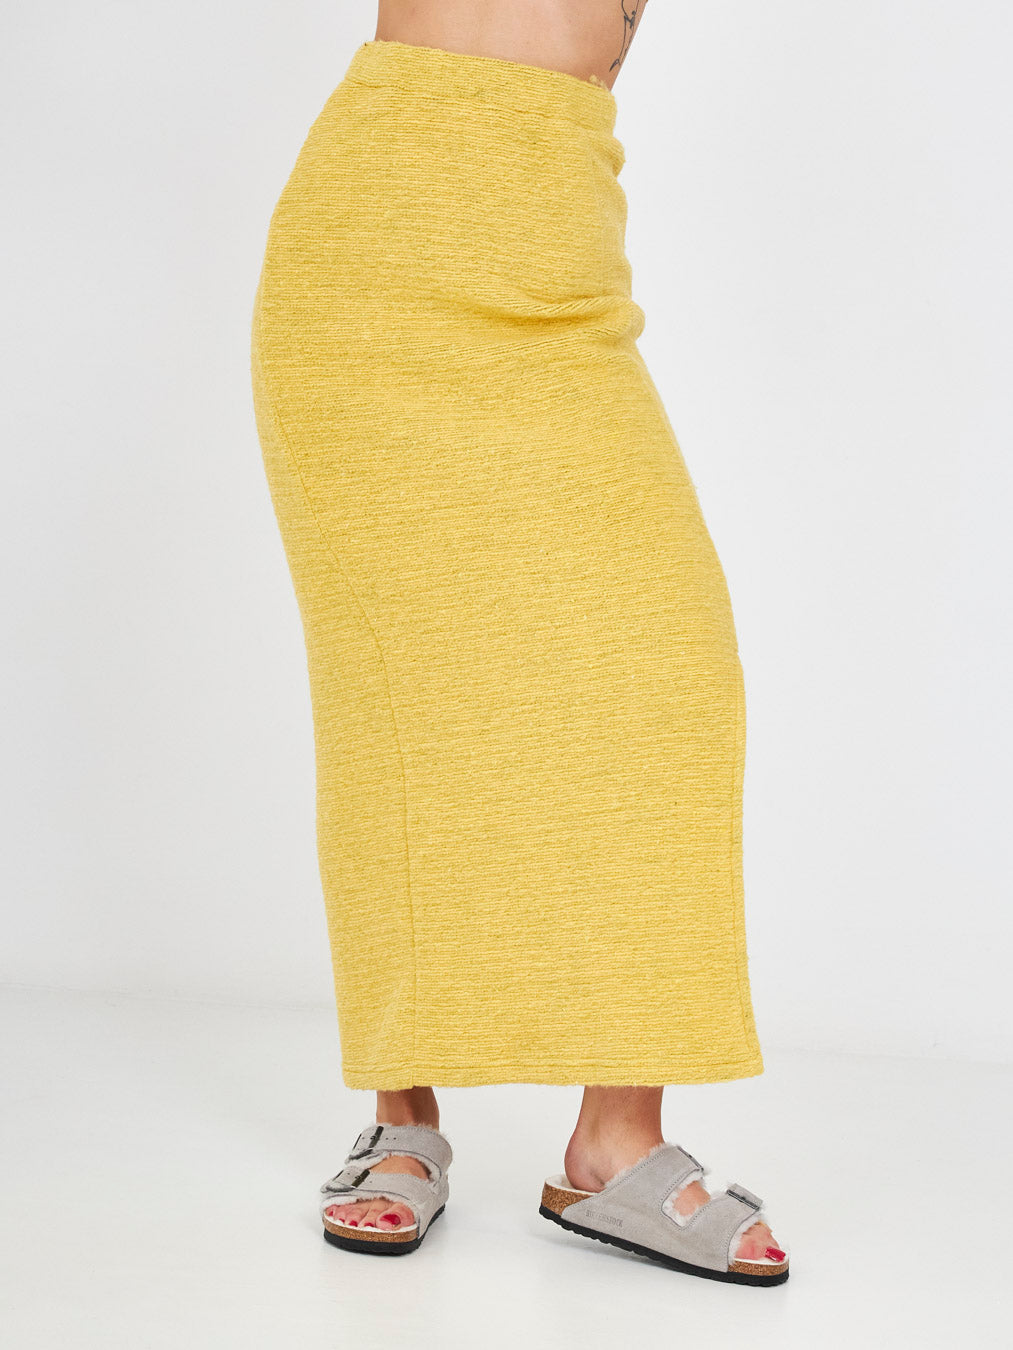 Cinq Rue yellow long skirt